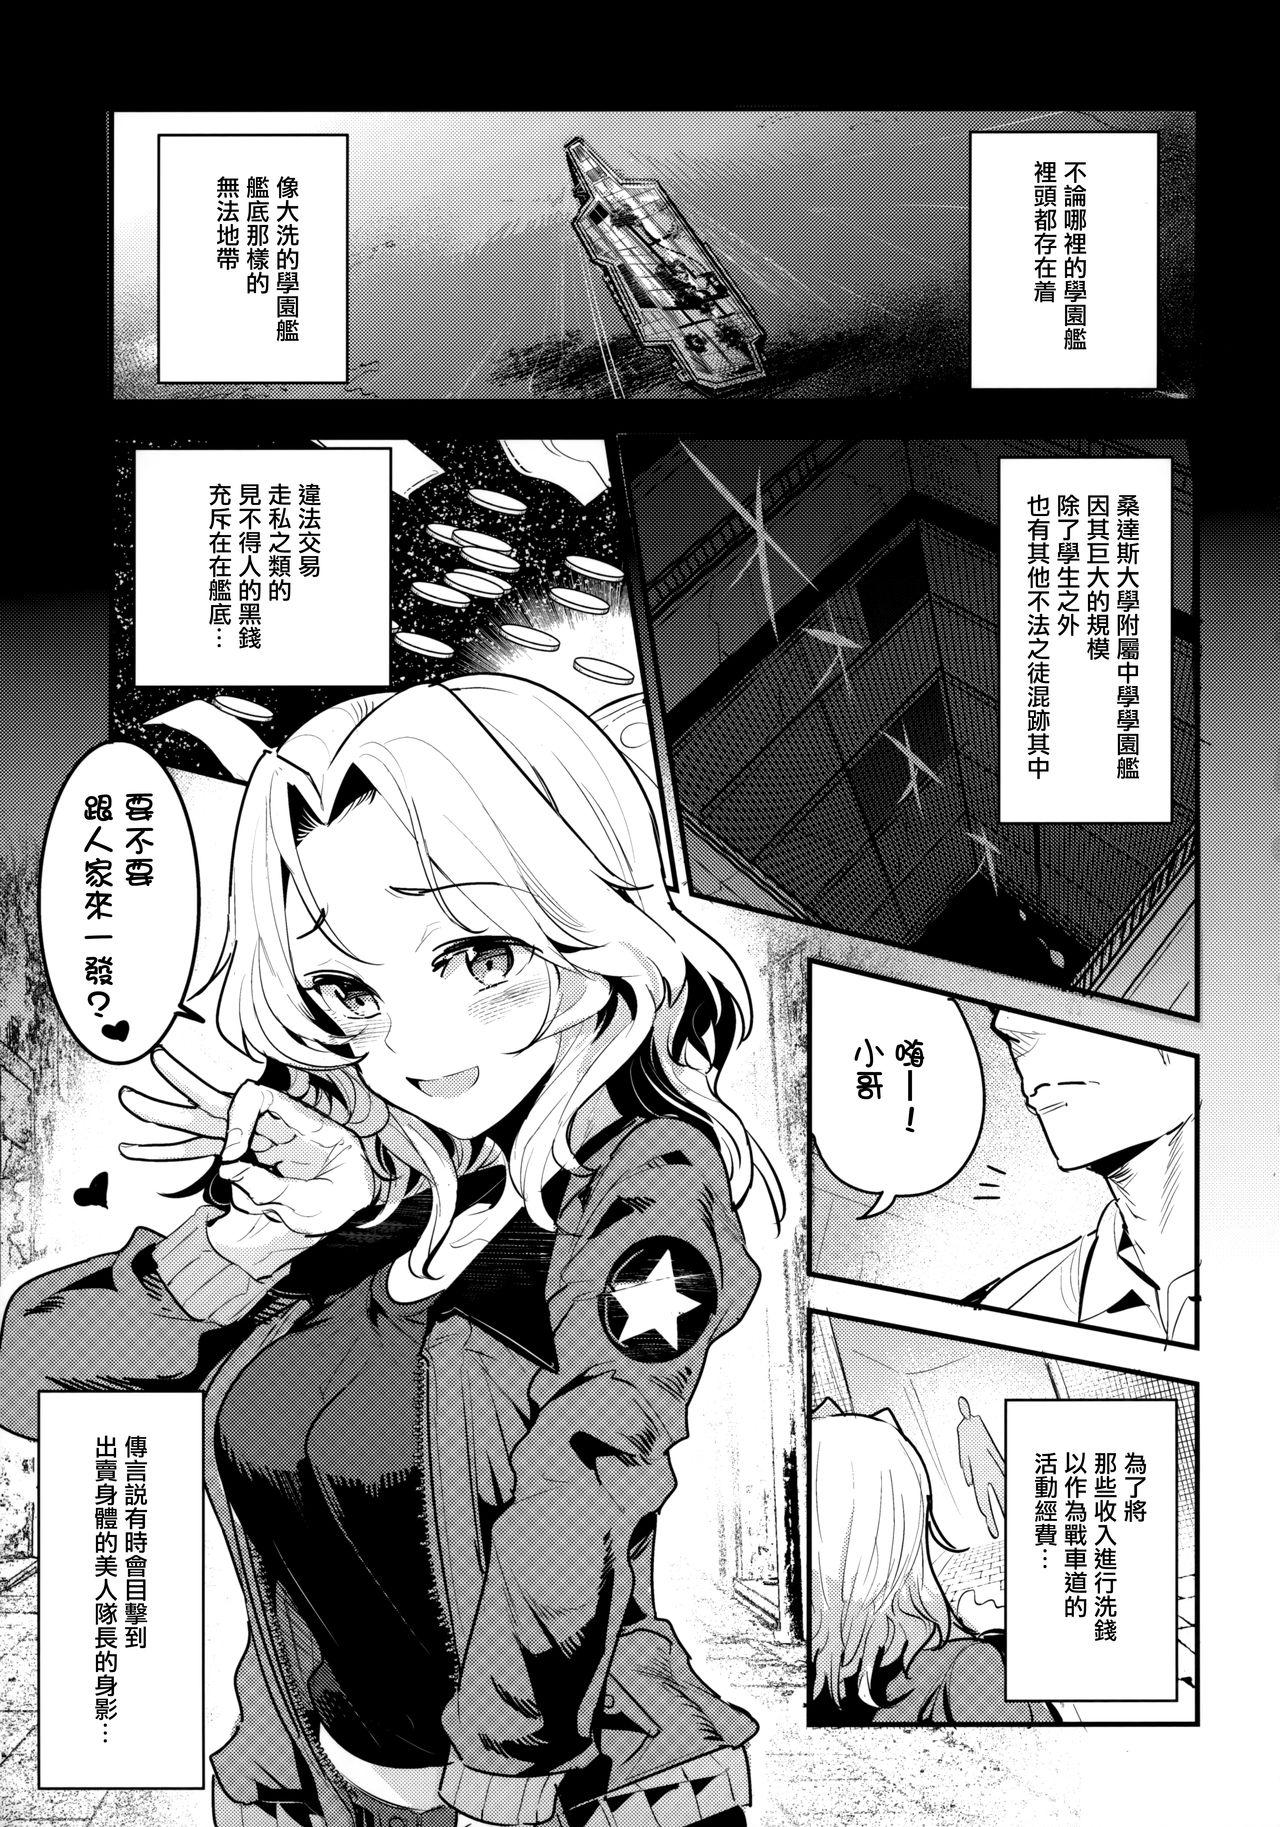 X GirlPan Rakugakichou 7 - Girls und panzer Petite - Page 4